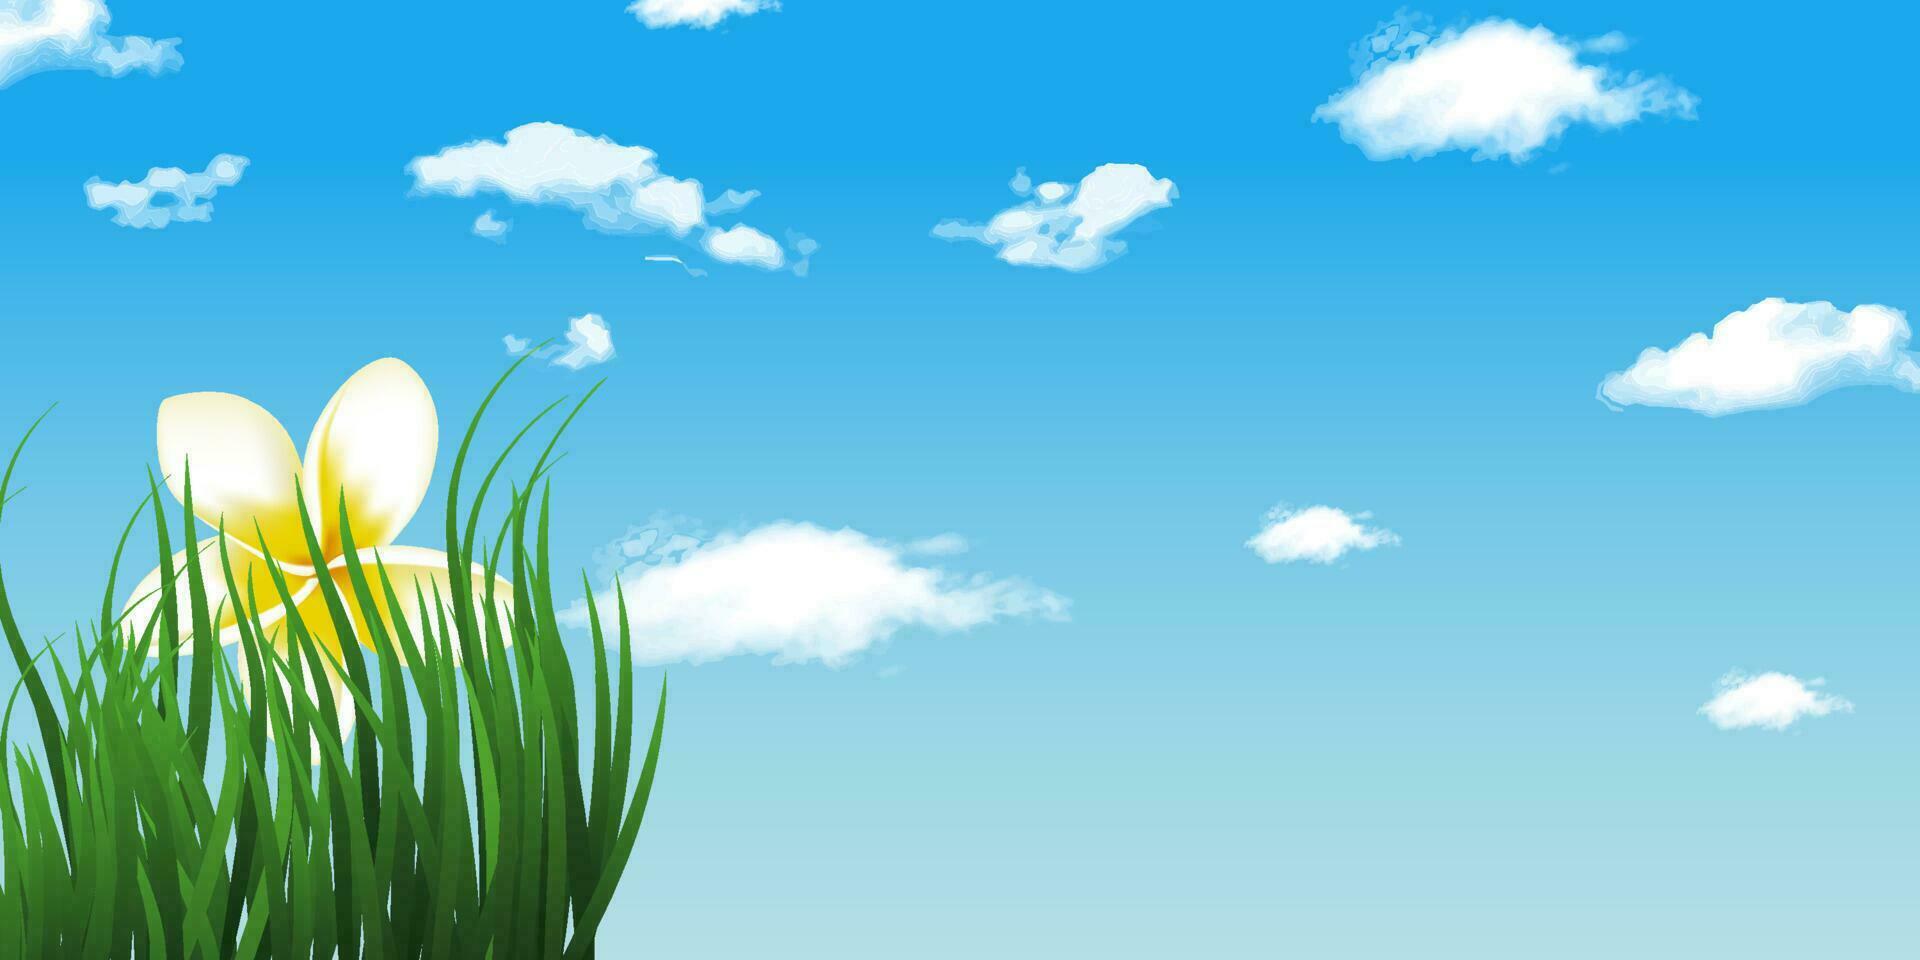 paesaggio con realistico erba, fiore, cielo e nuvole. vettore